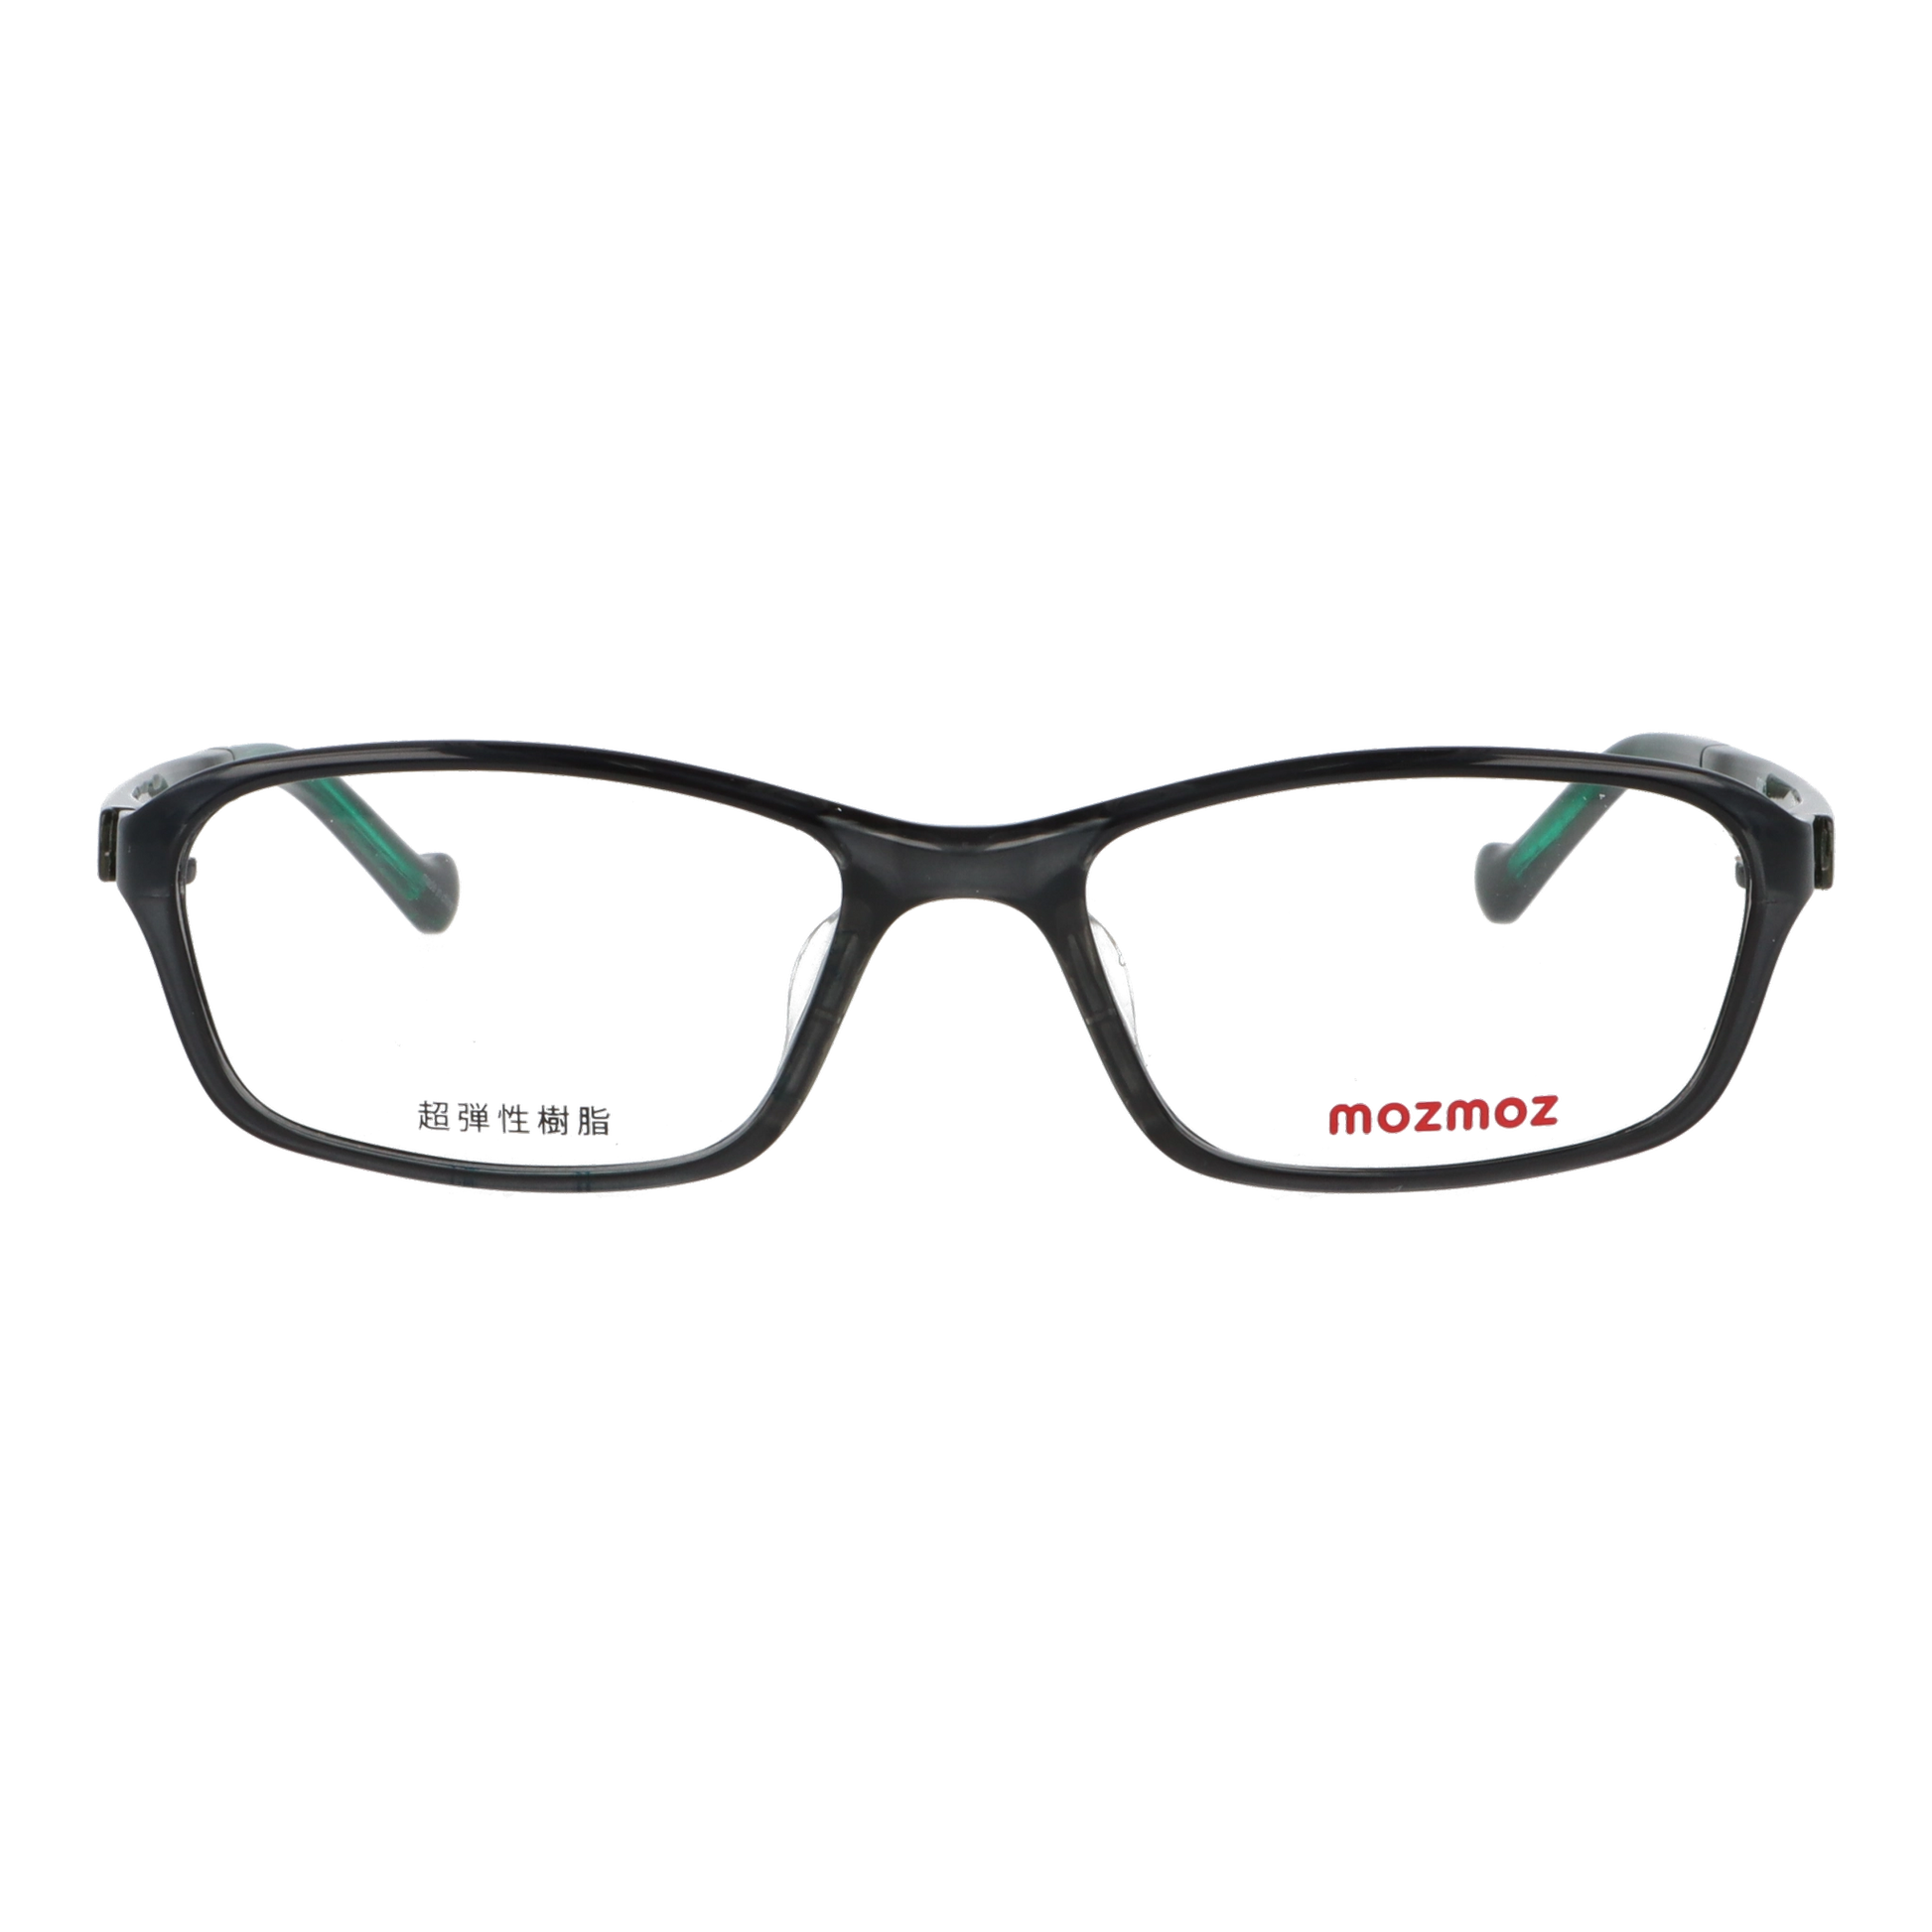 正面から見たアイウェア【軽量】こどもメガネ mo3003のカラーグレー/グリーン